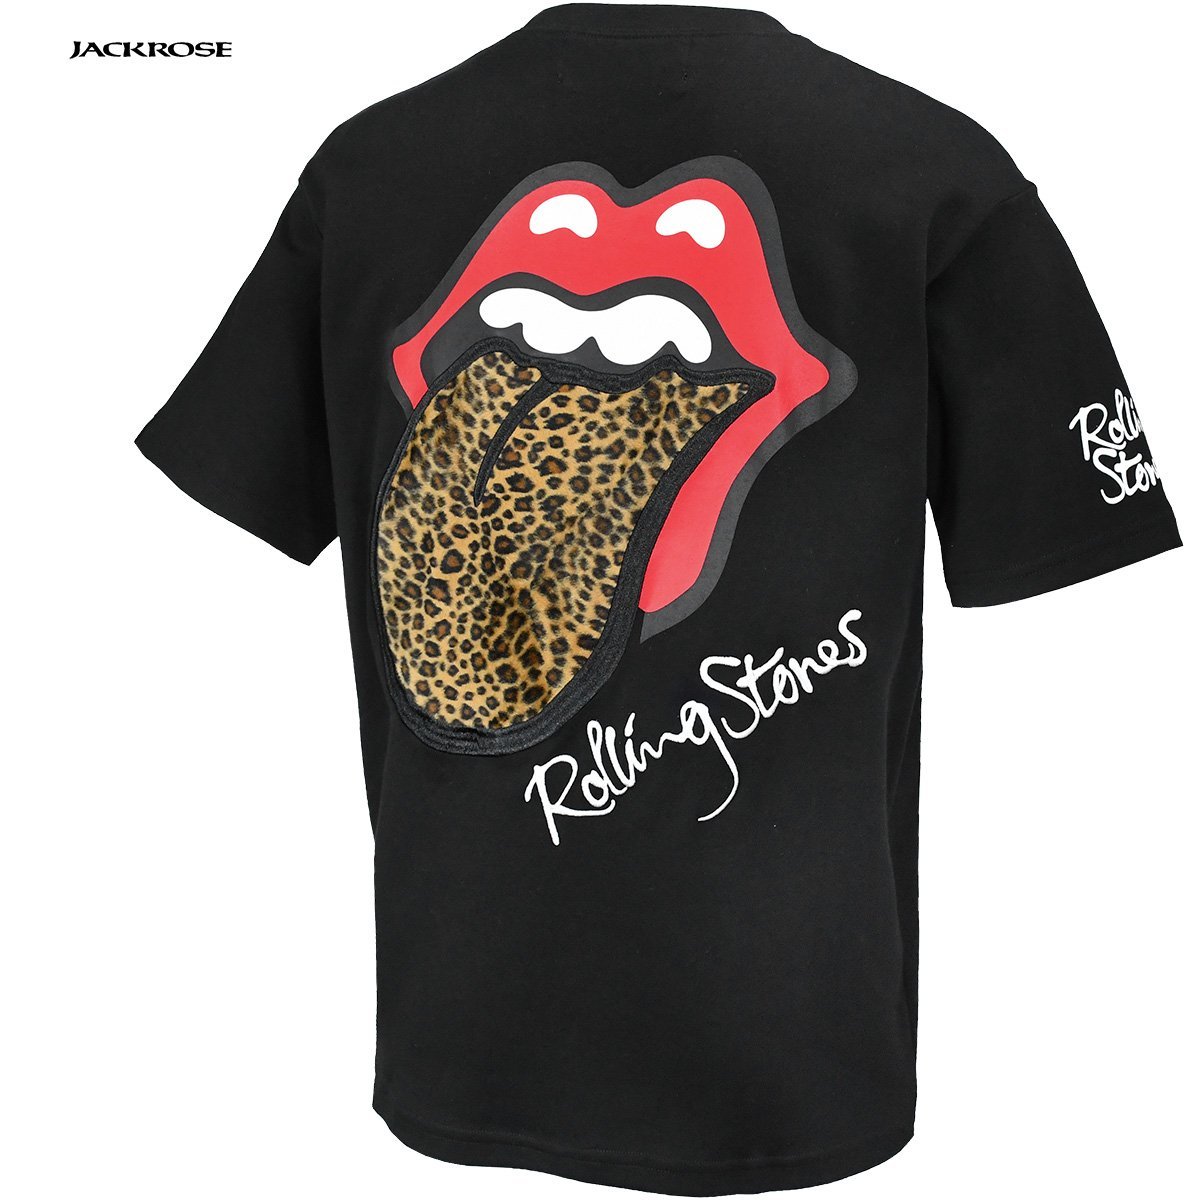 523563-012 THE ROLLING STONES ローリングストーンズ クルーネック半袖Tシャツ リップアンドタン メンズ (ブラック黒×舌ヒョウ柄) XL_画像4